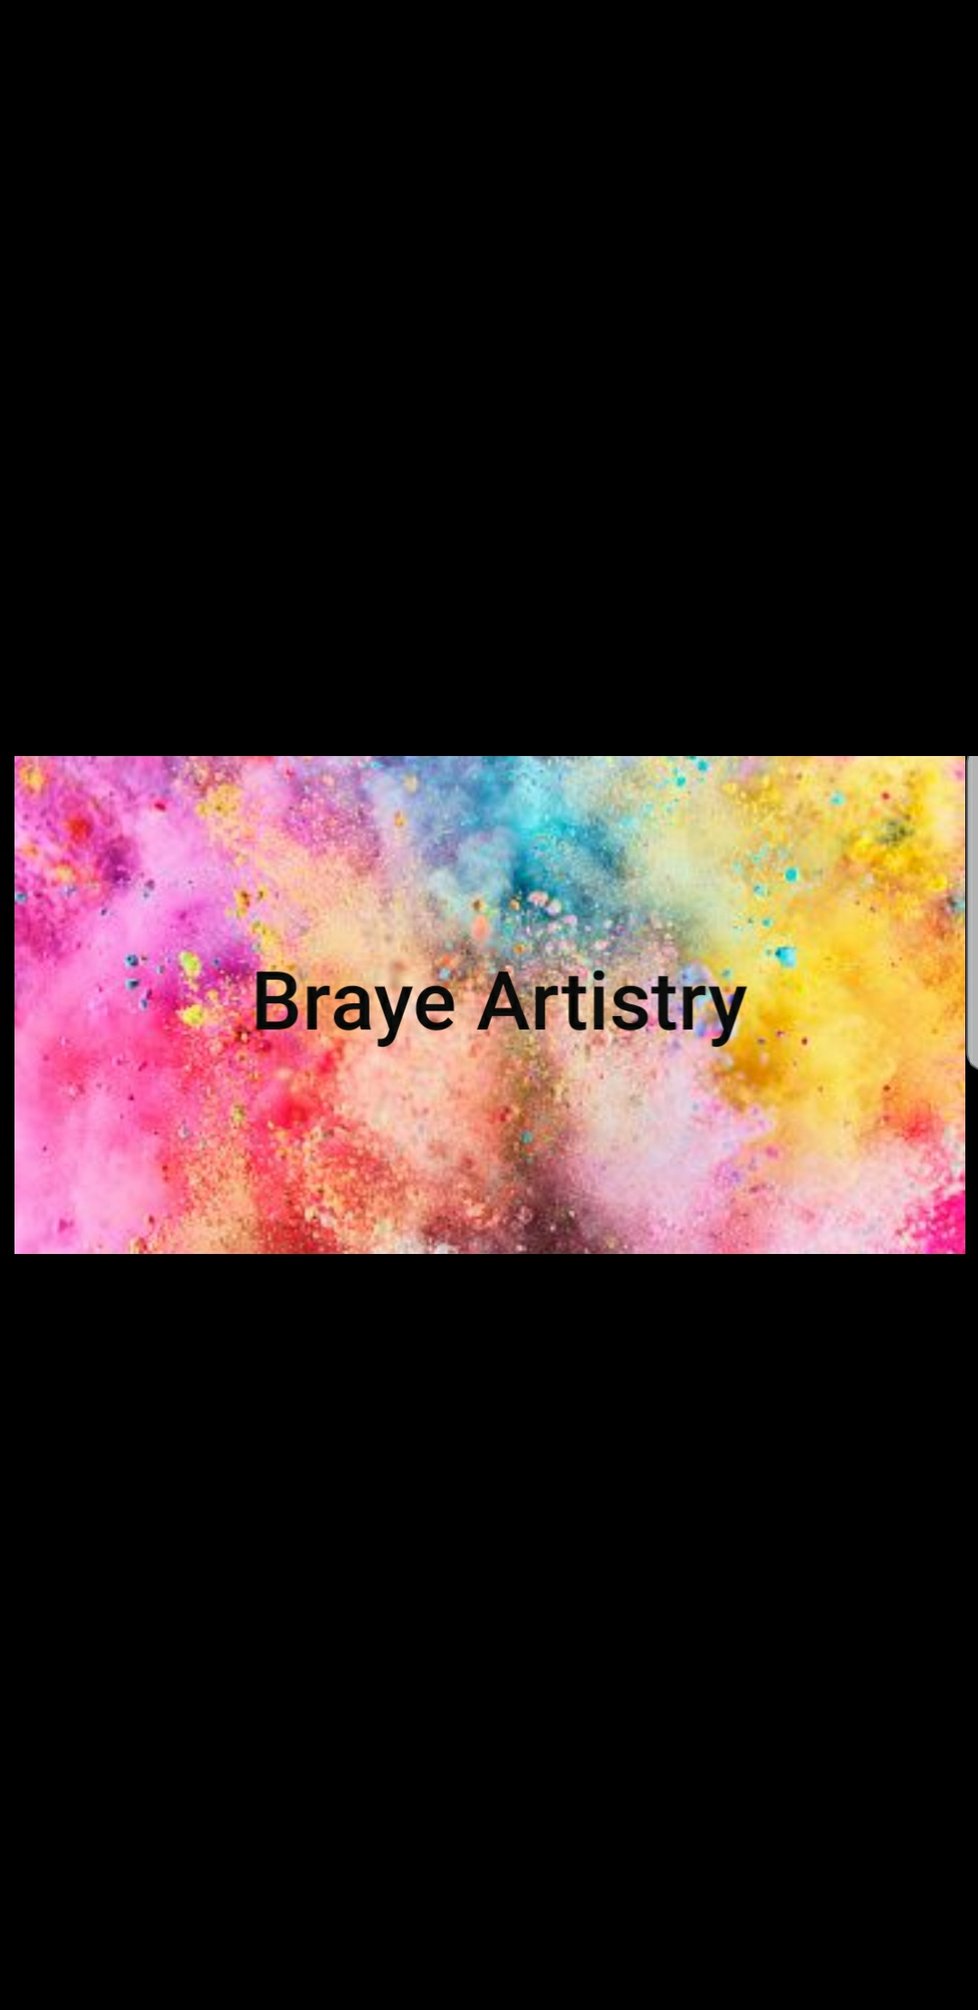 Braye Artistry